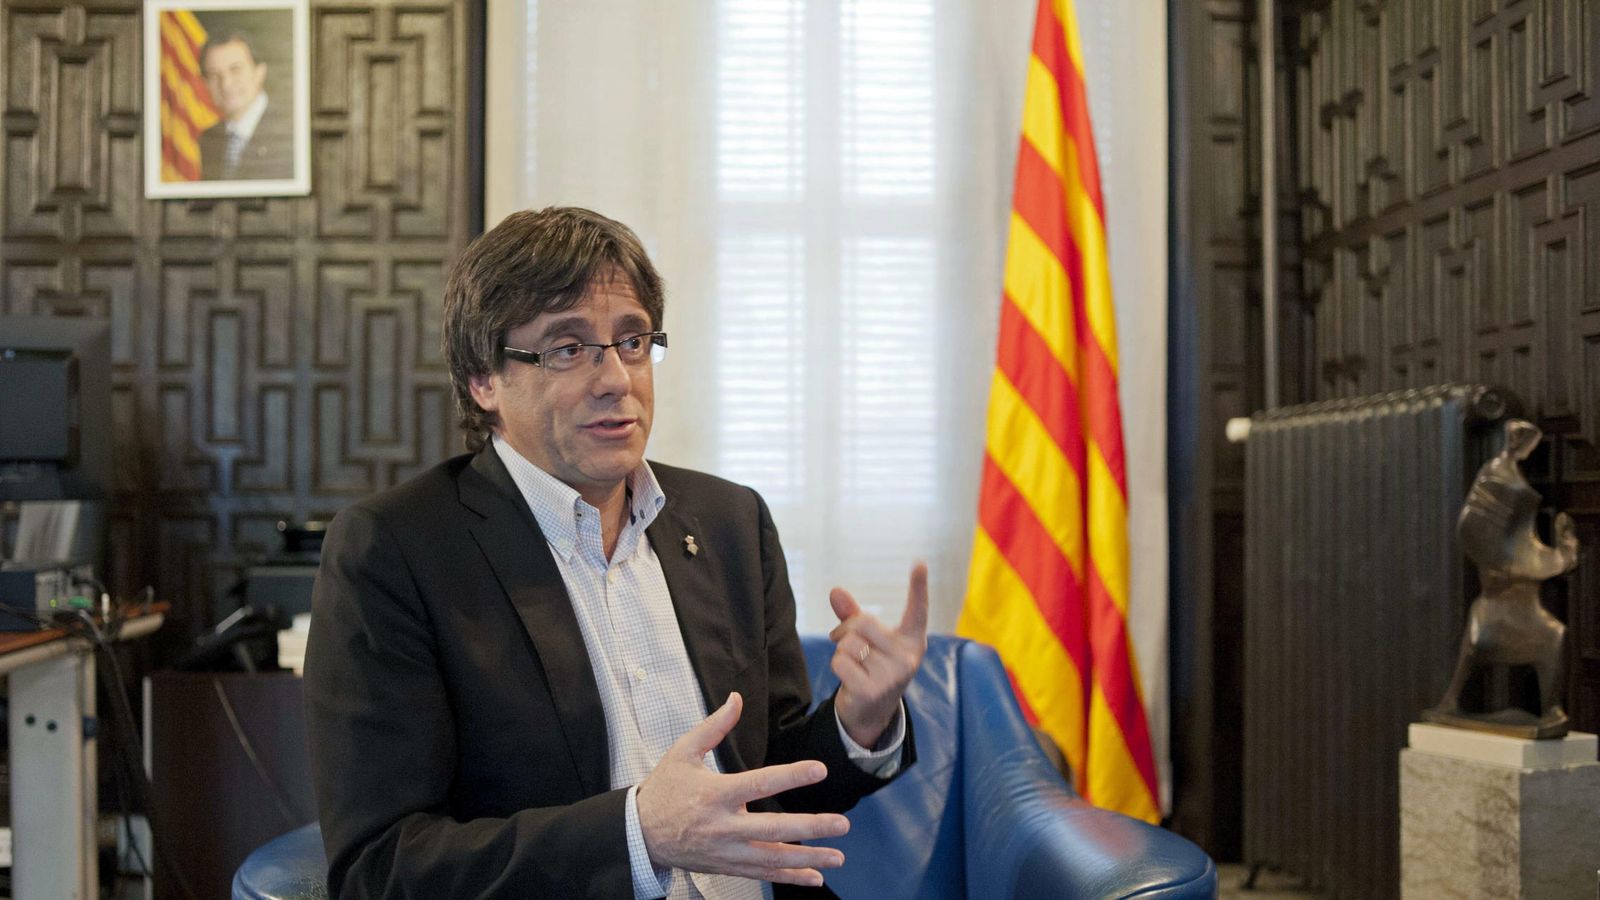 Foto: El alcalde de Girona, el convergente Carles Puigdemont. (EFE)